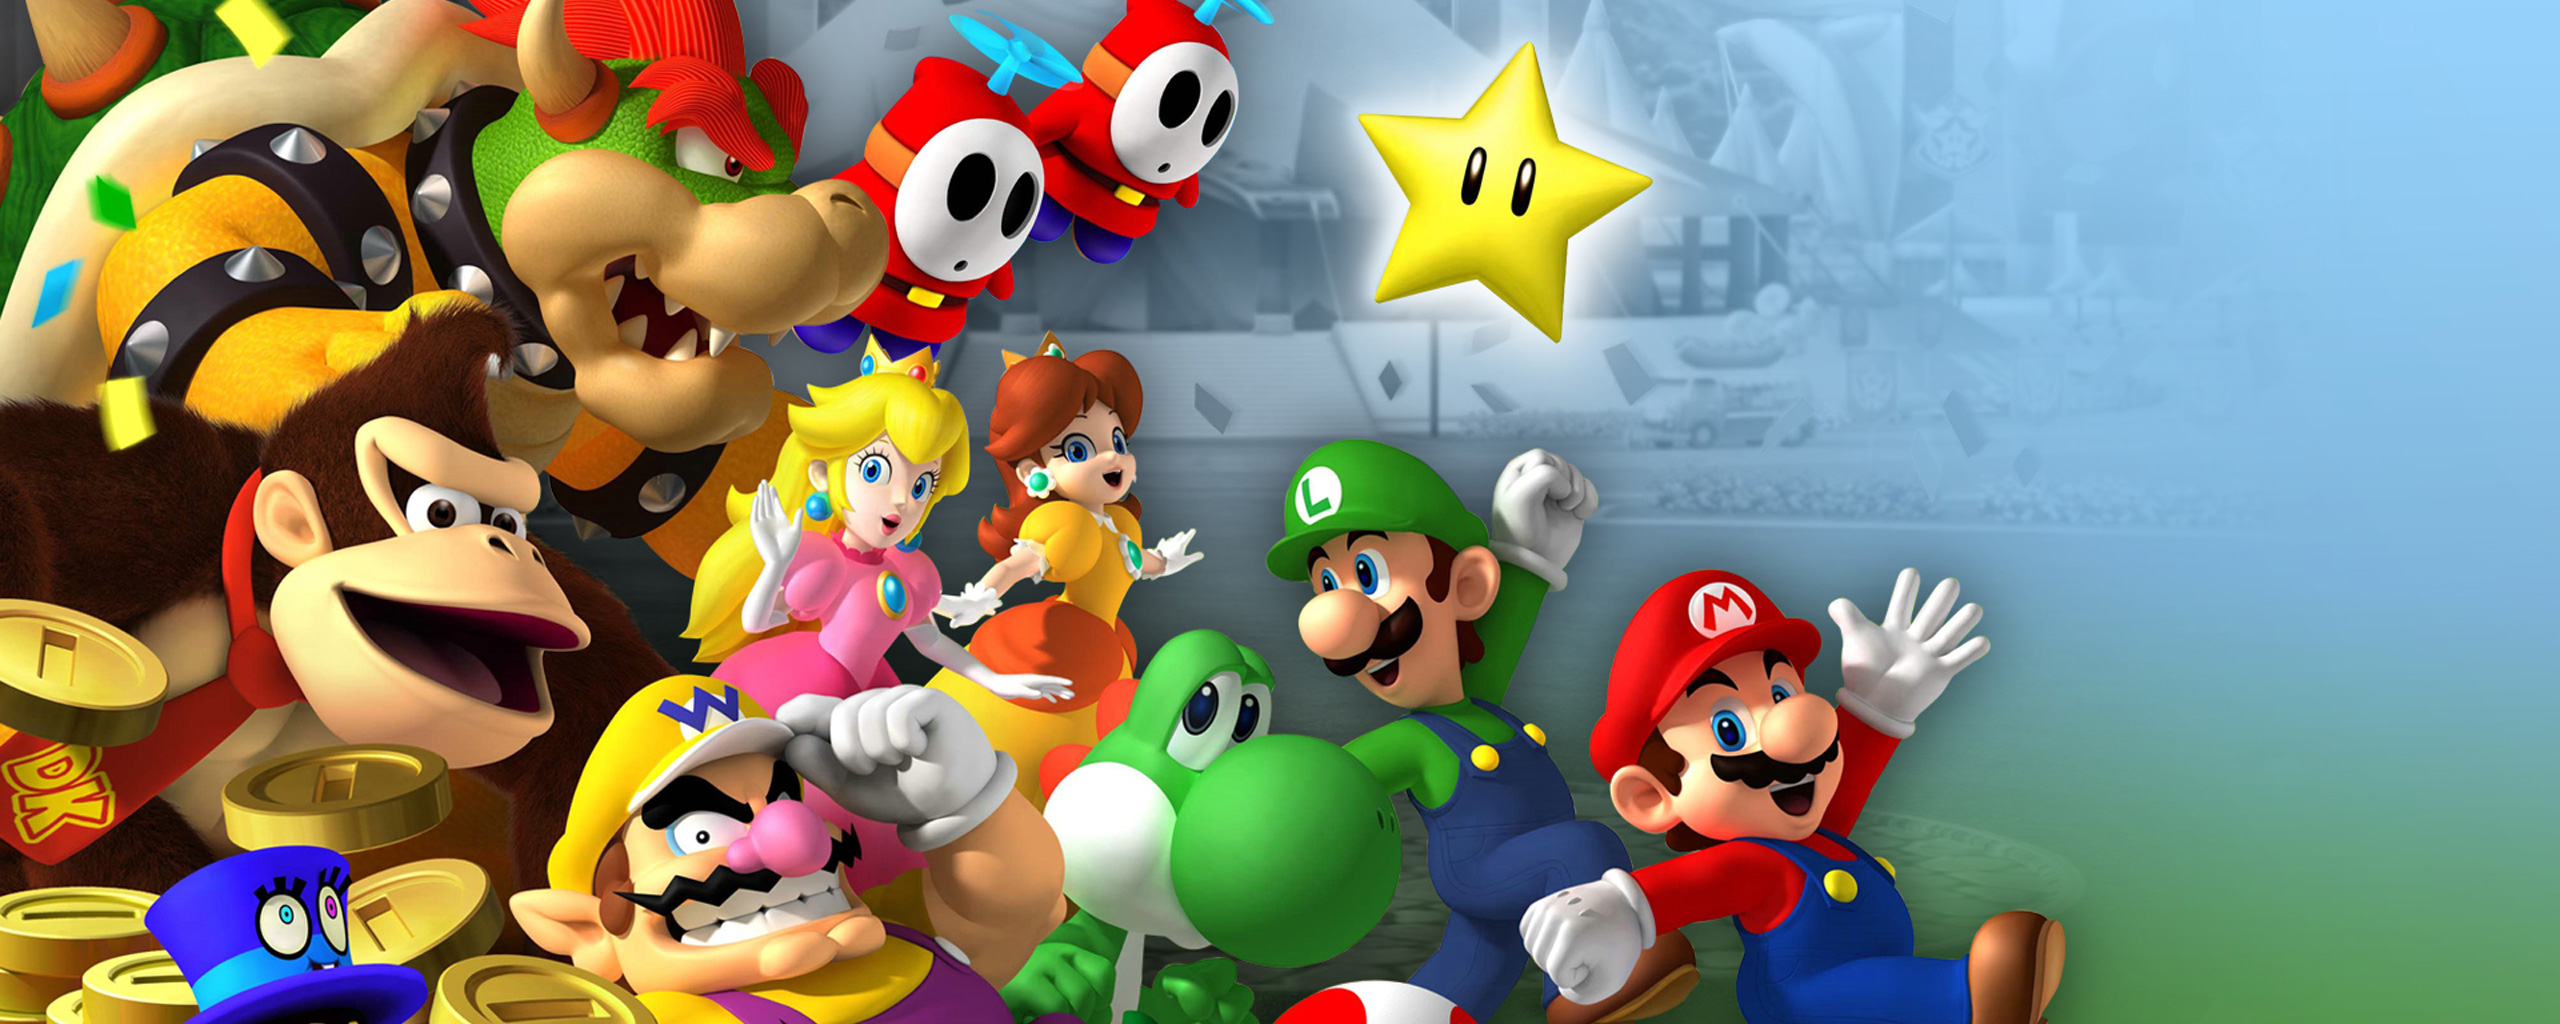 Melhores papéis de parede de Mario Party 8 para tela do telefone